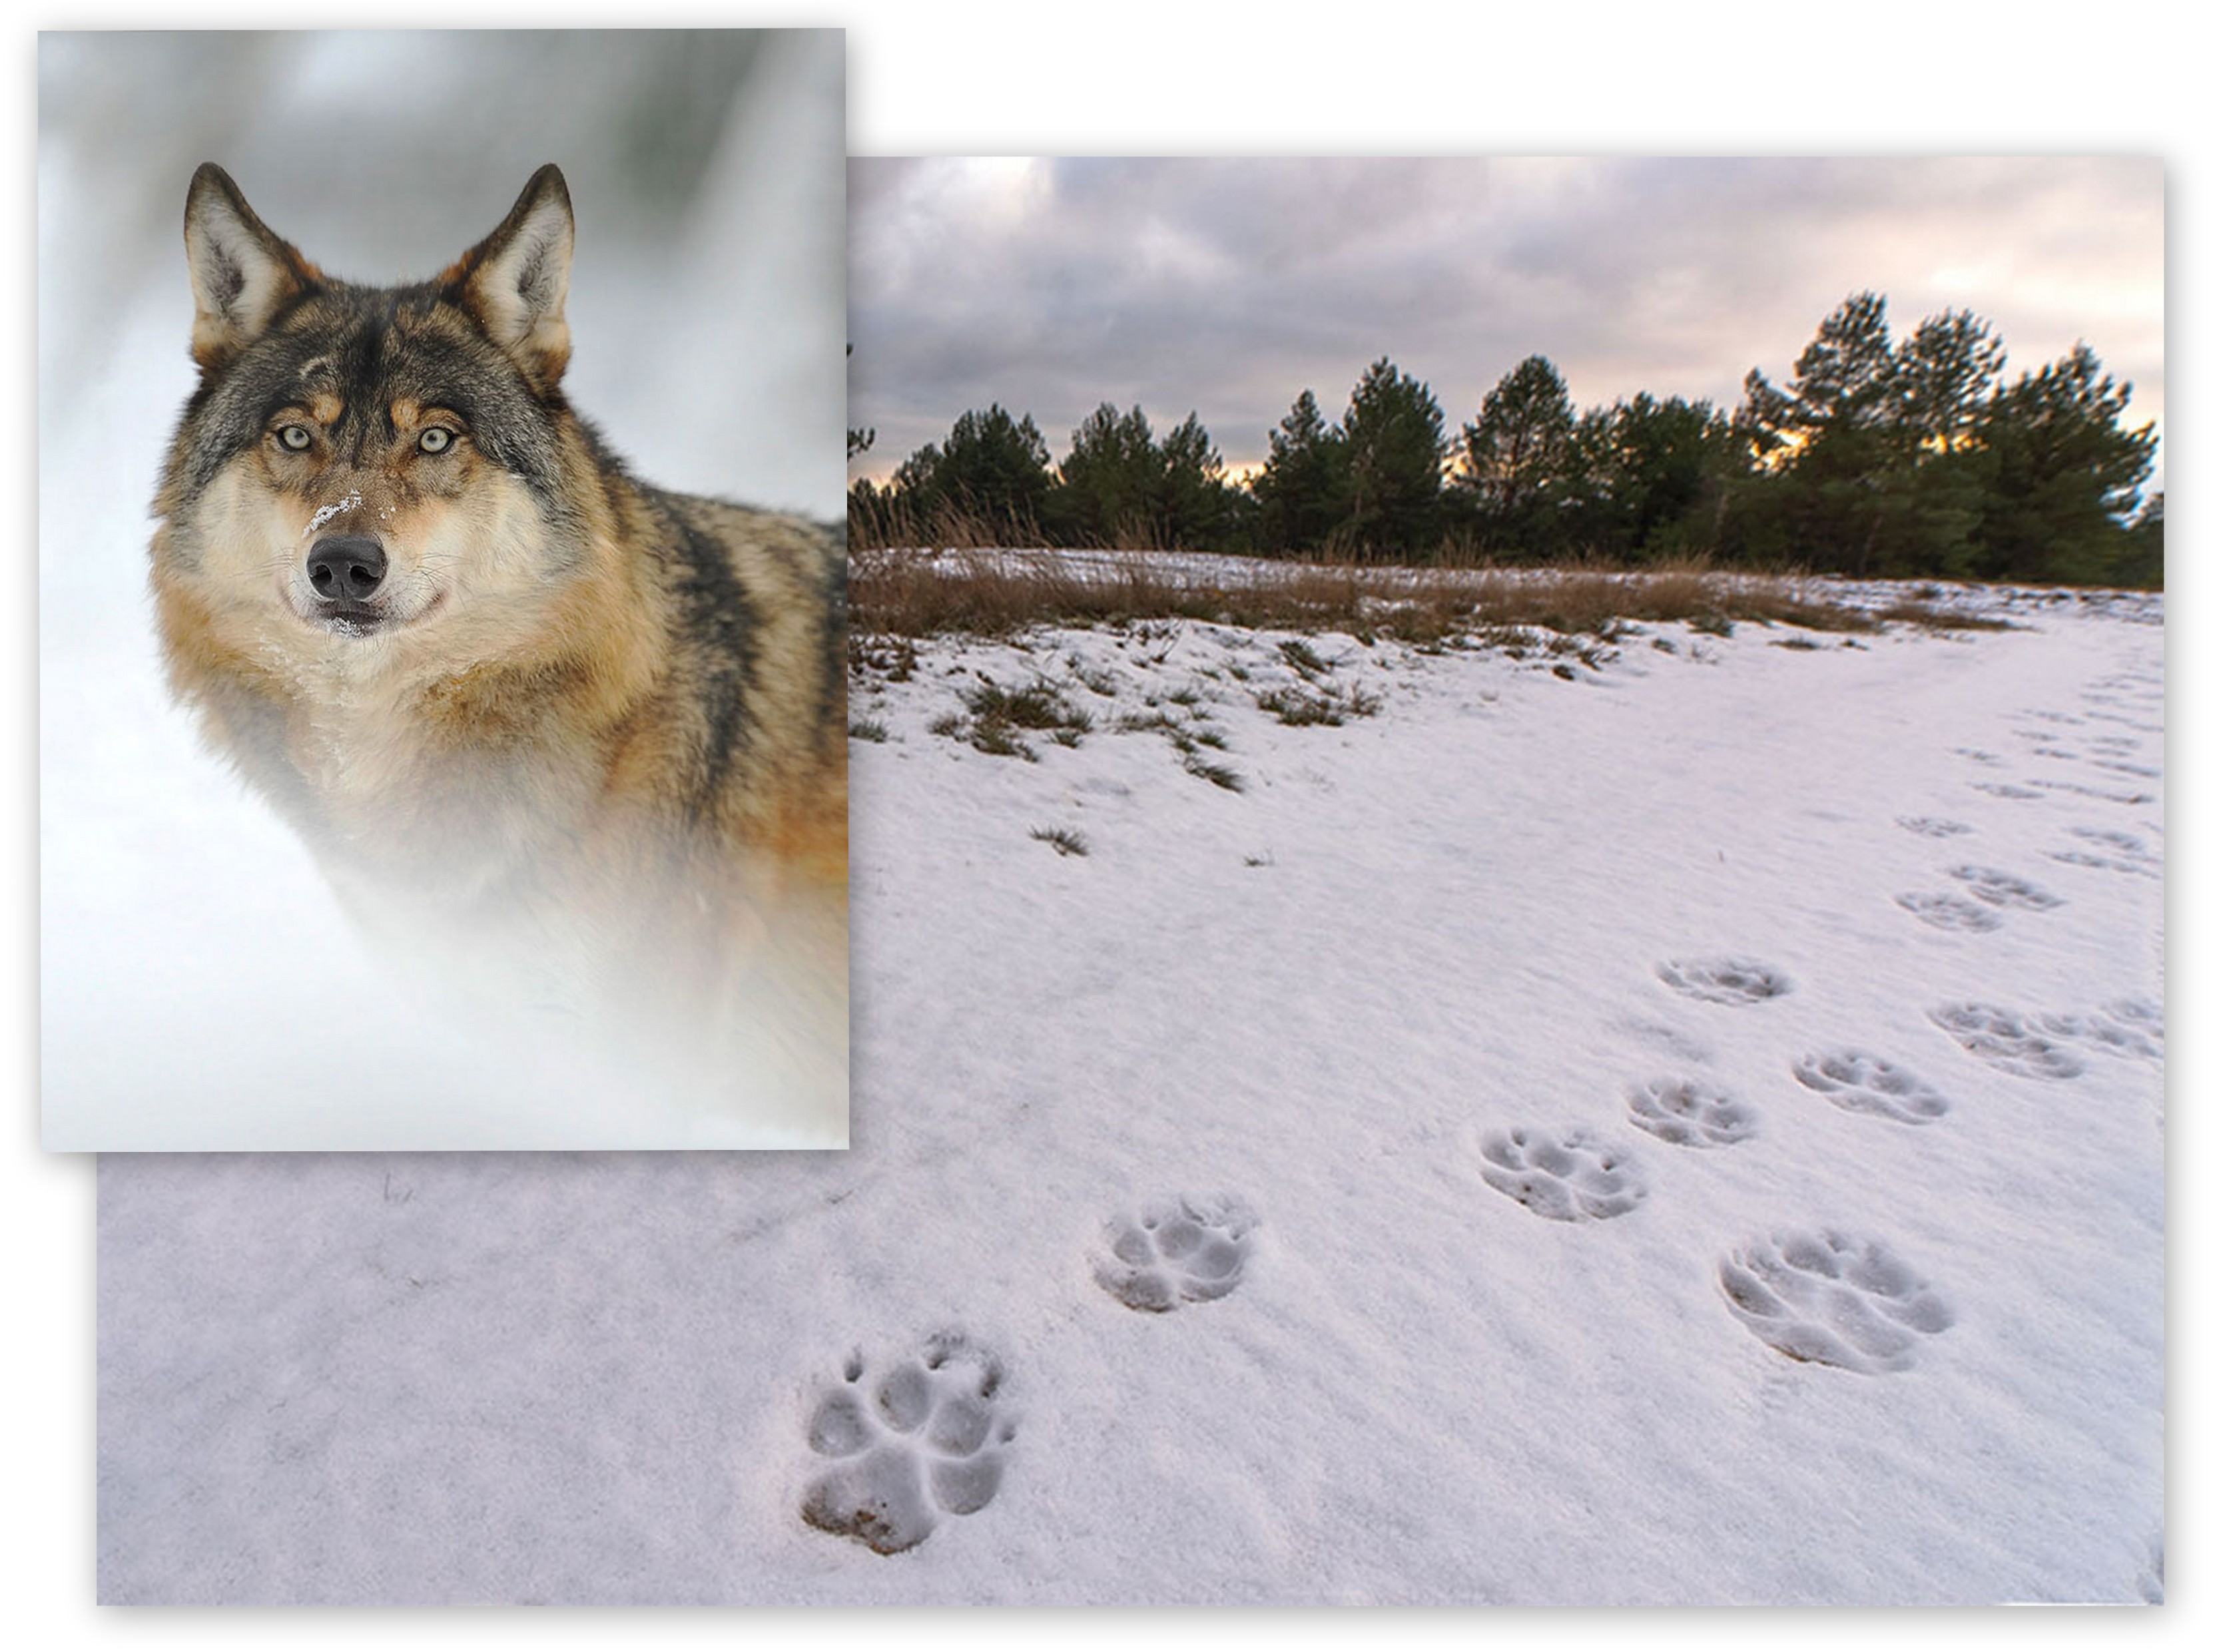 Trop wilka odciśnięty na śniegu. Fot. Hubert Jasionowski